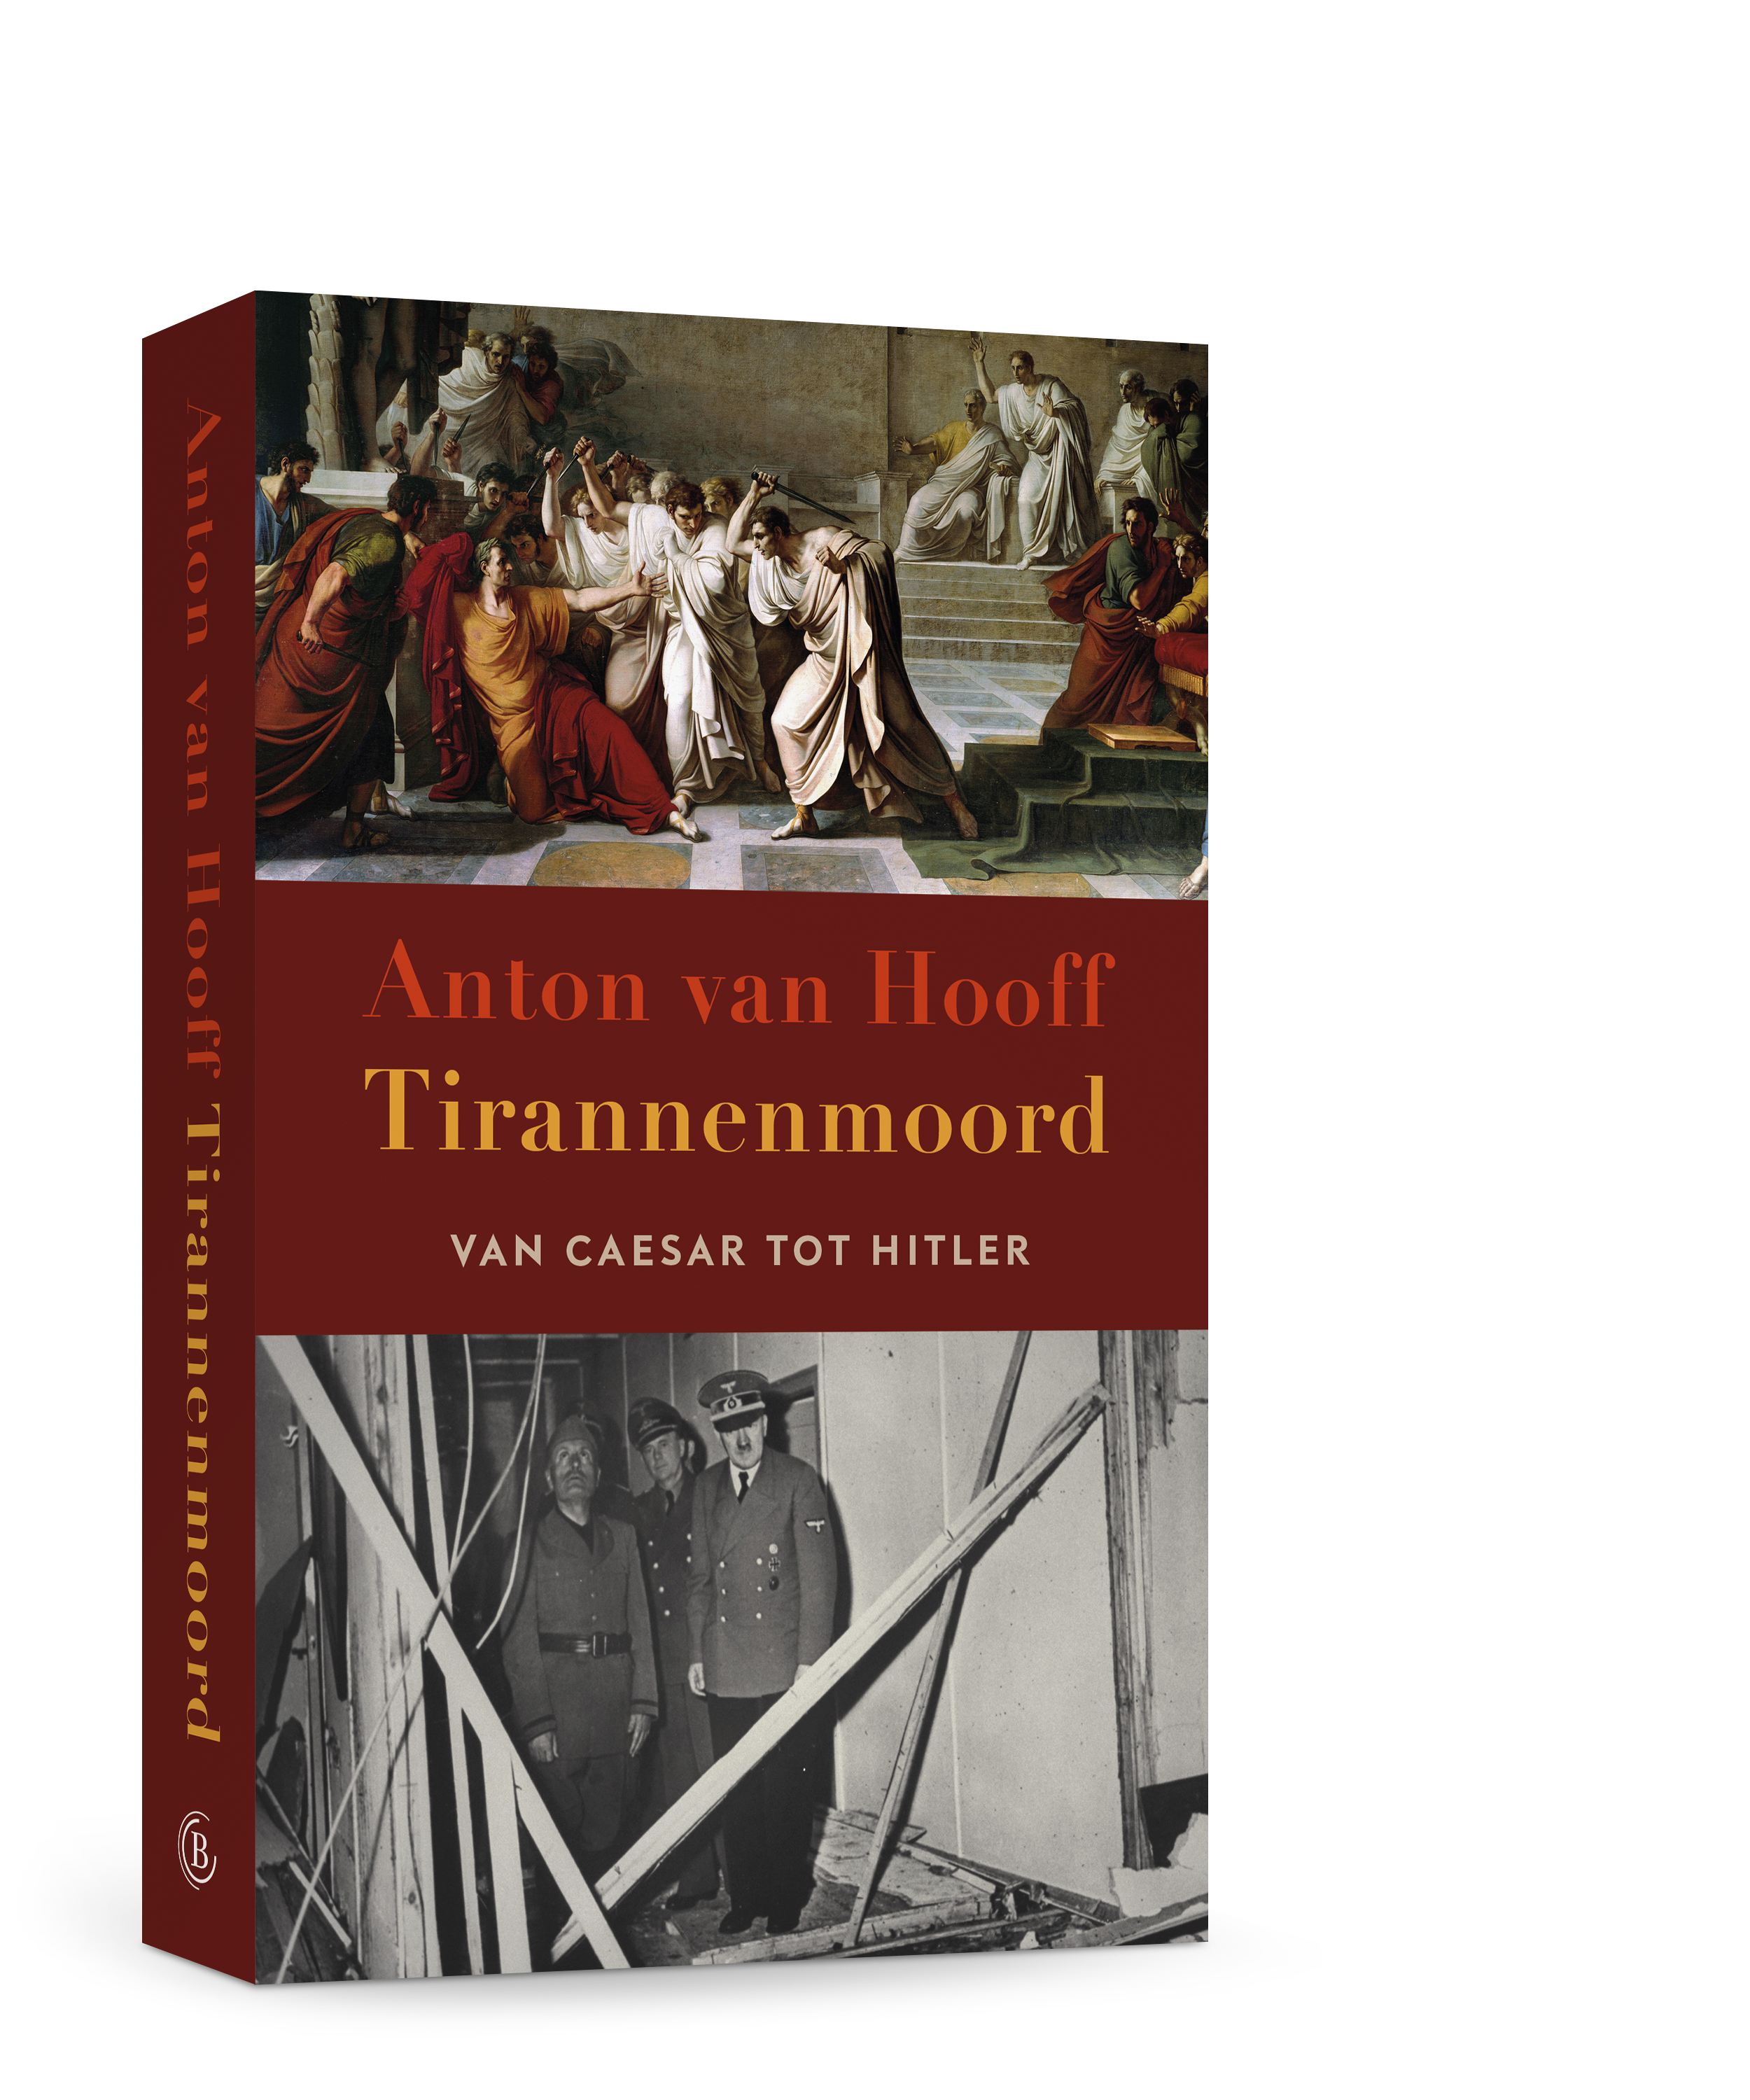 Vrijdag 22 april: lezing Anton van Hooff over zijn boek 'Tirannenmoord'